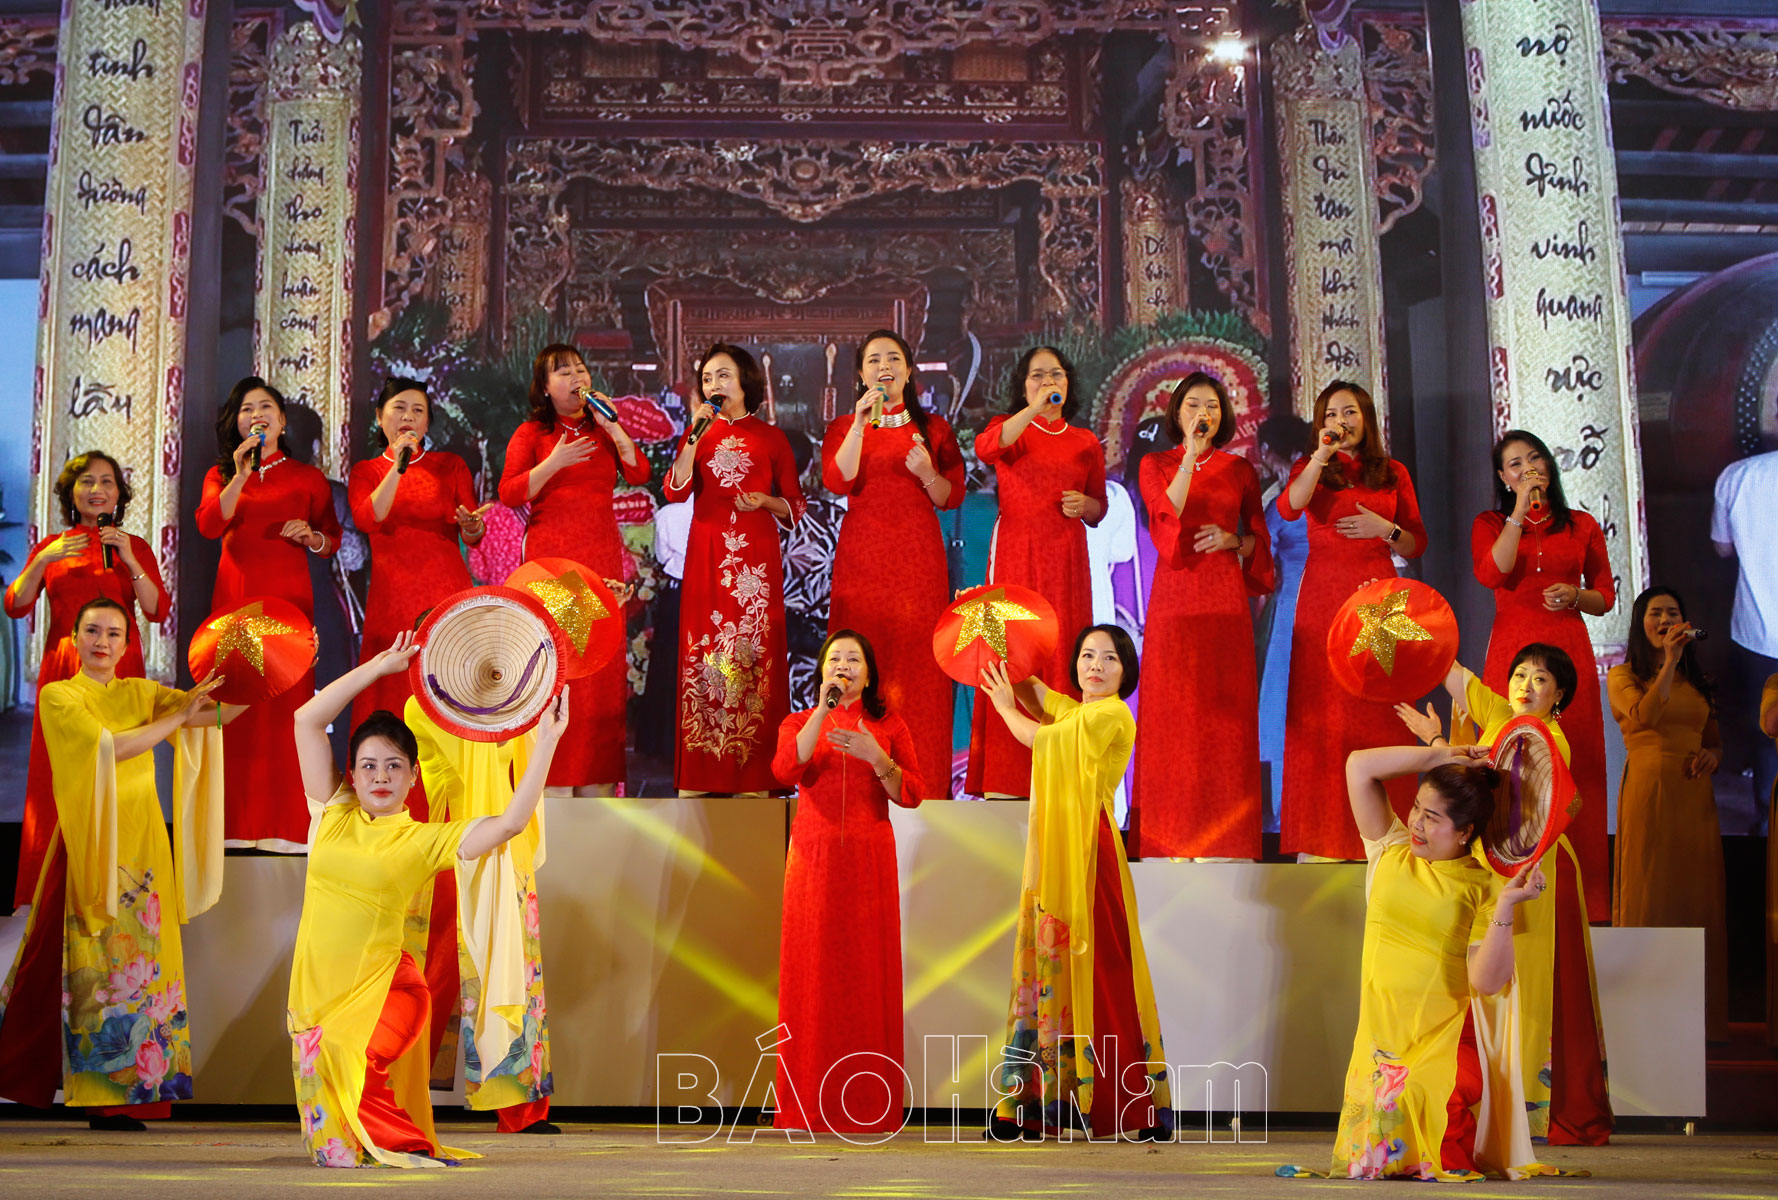 Bế mạc Liên hoan Nghệ thuật quần chúng tỉnh Hà Nam năm 2023